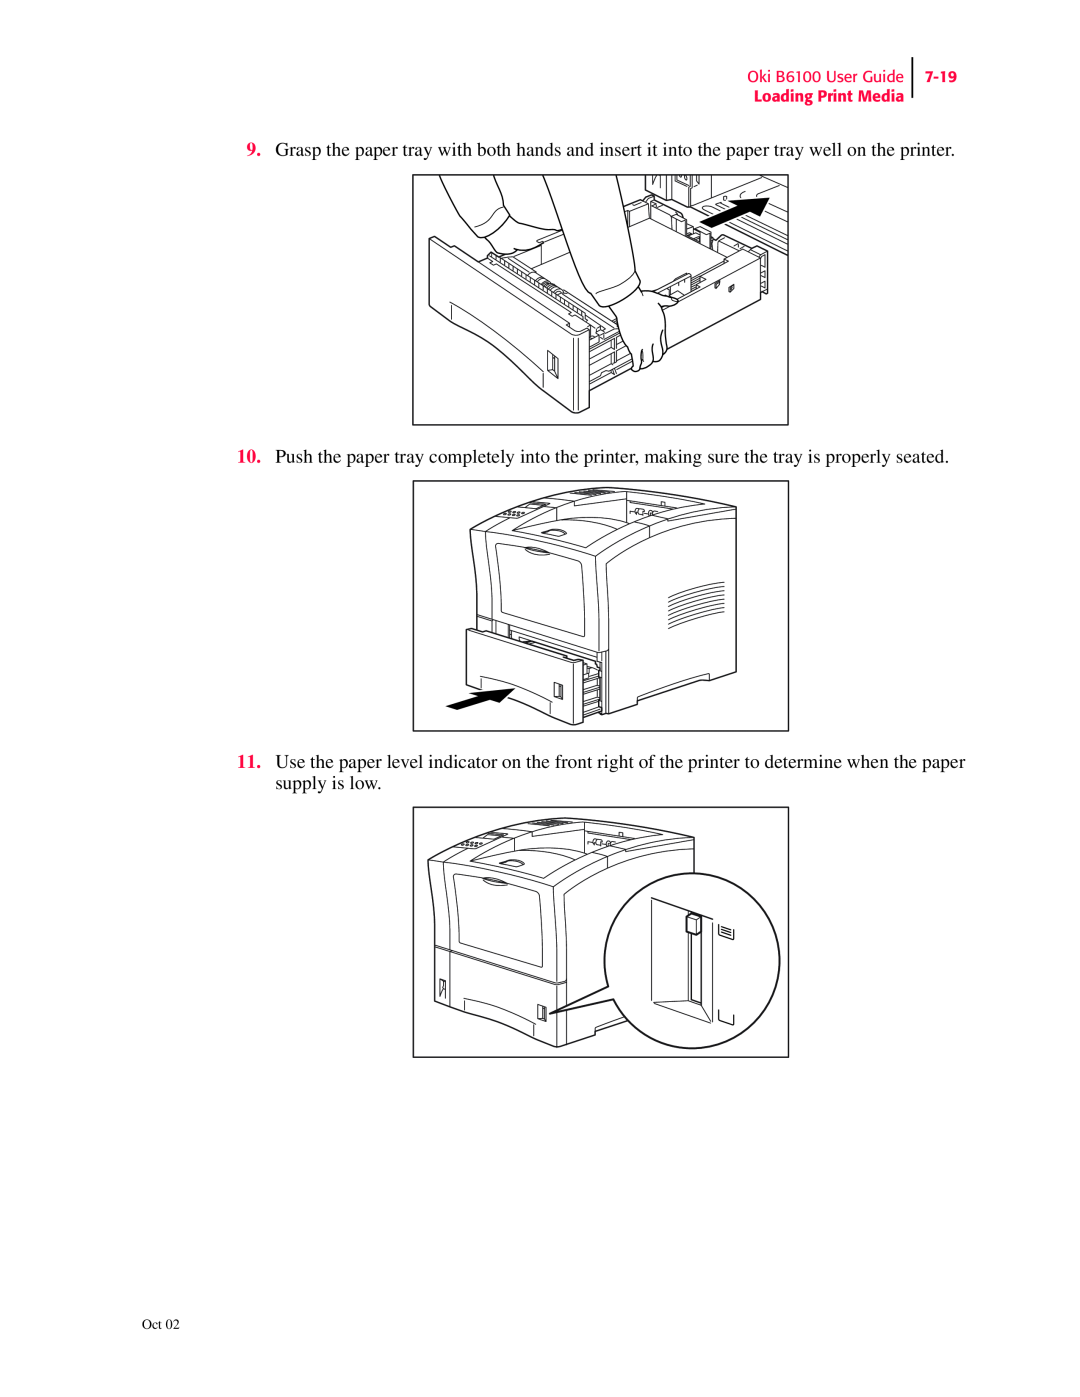 Oki manual Oki B6100 User Guide Loading Print Media, 7-19 